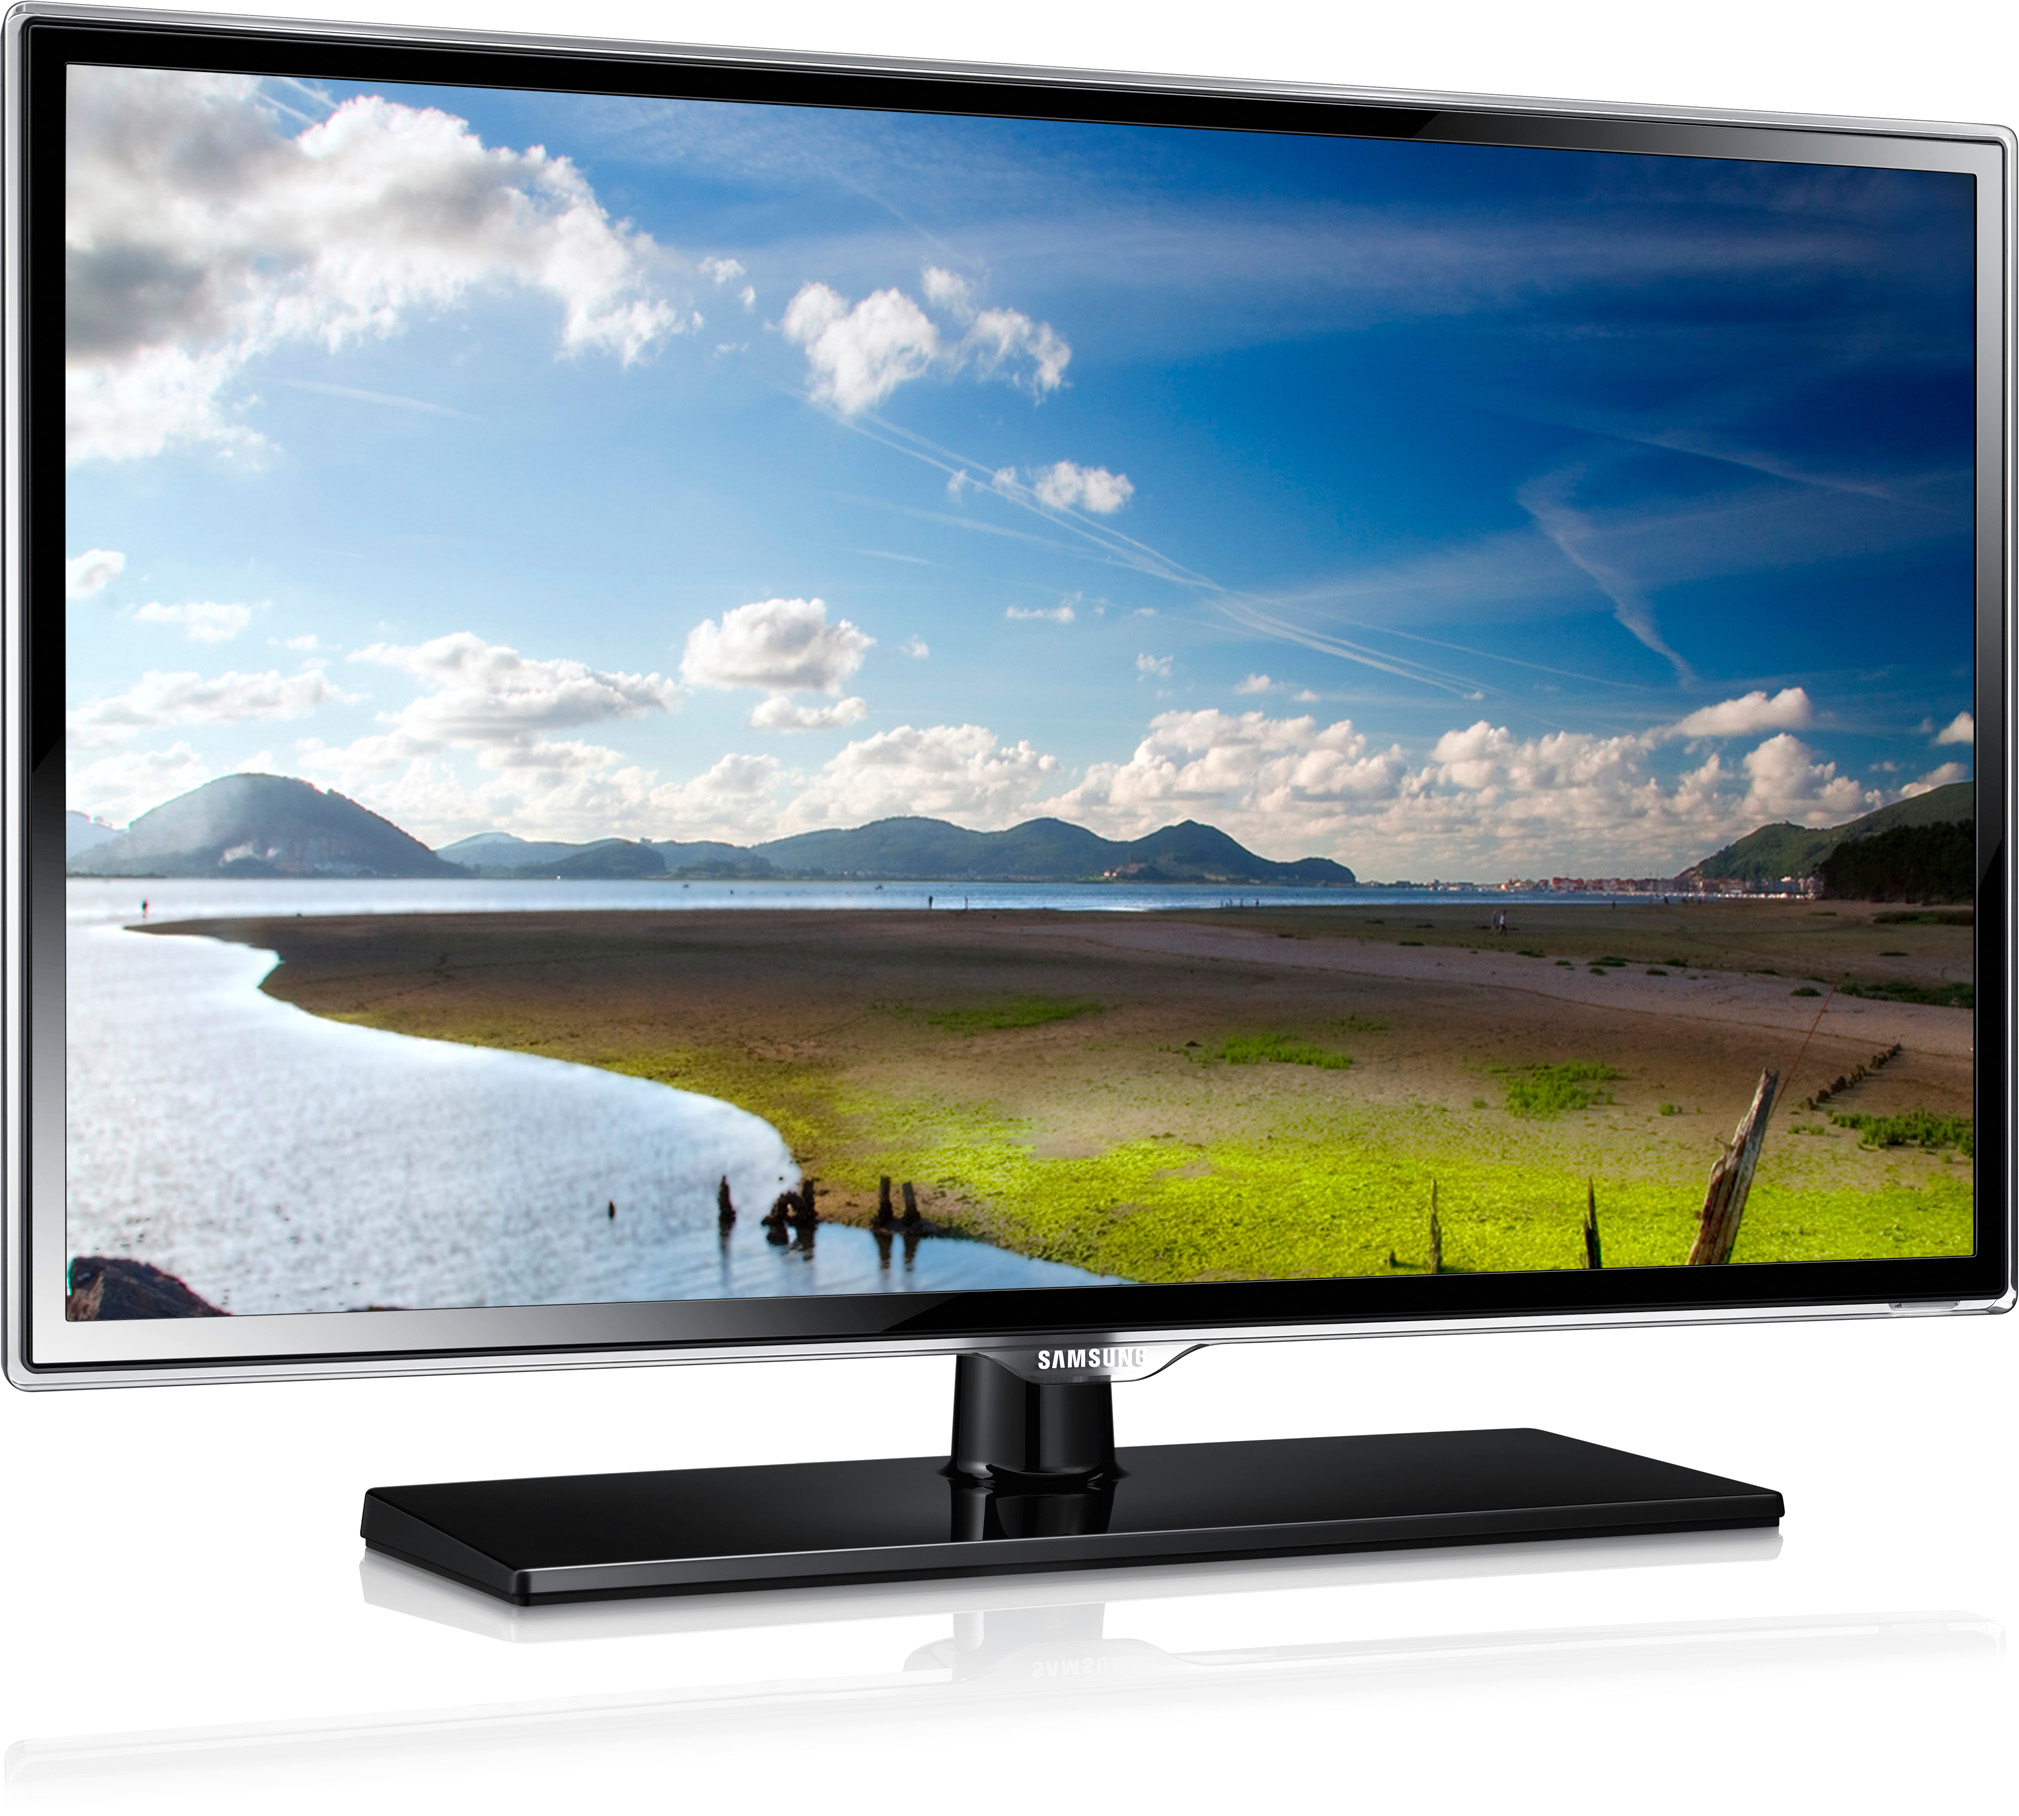 Купить телевизор без переплаты. Samsung ue32es5507. Samsung ue50es5507k. Samsung 32k6000. UE 32c600rw.